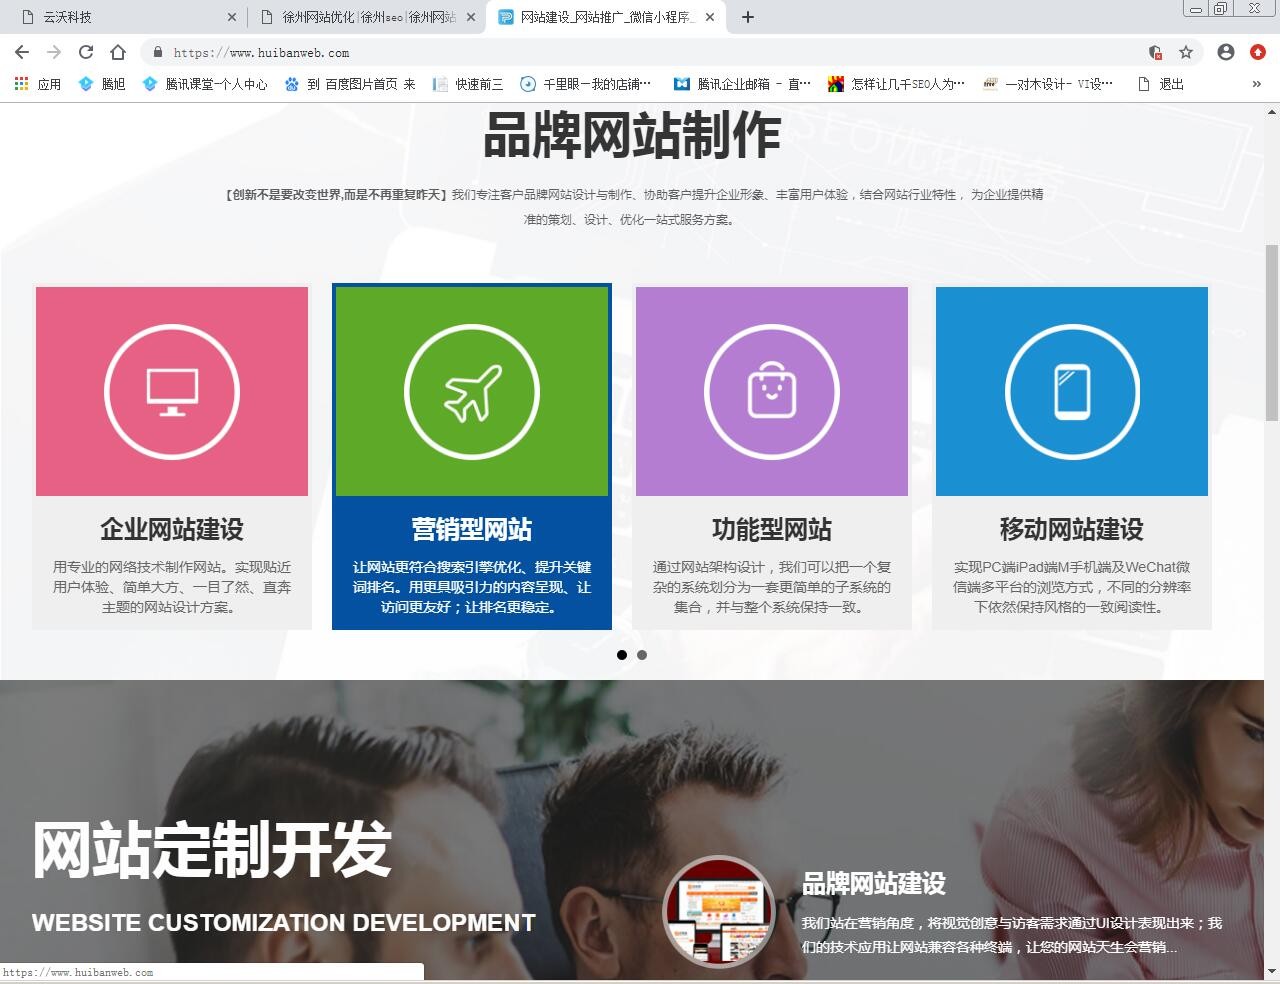 为什么北京云无限公司网站总被抄袭